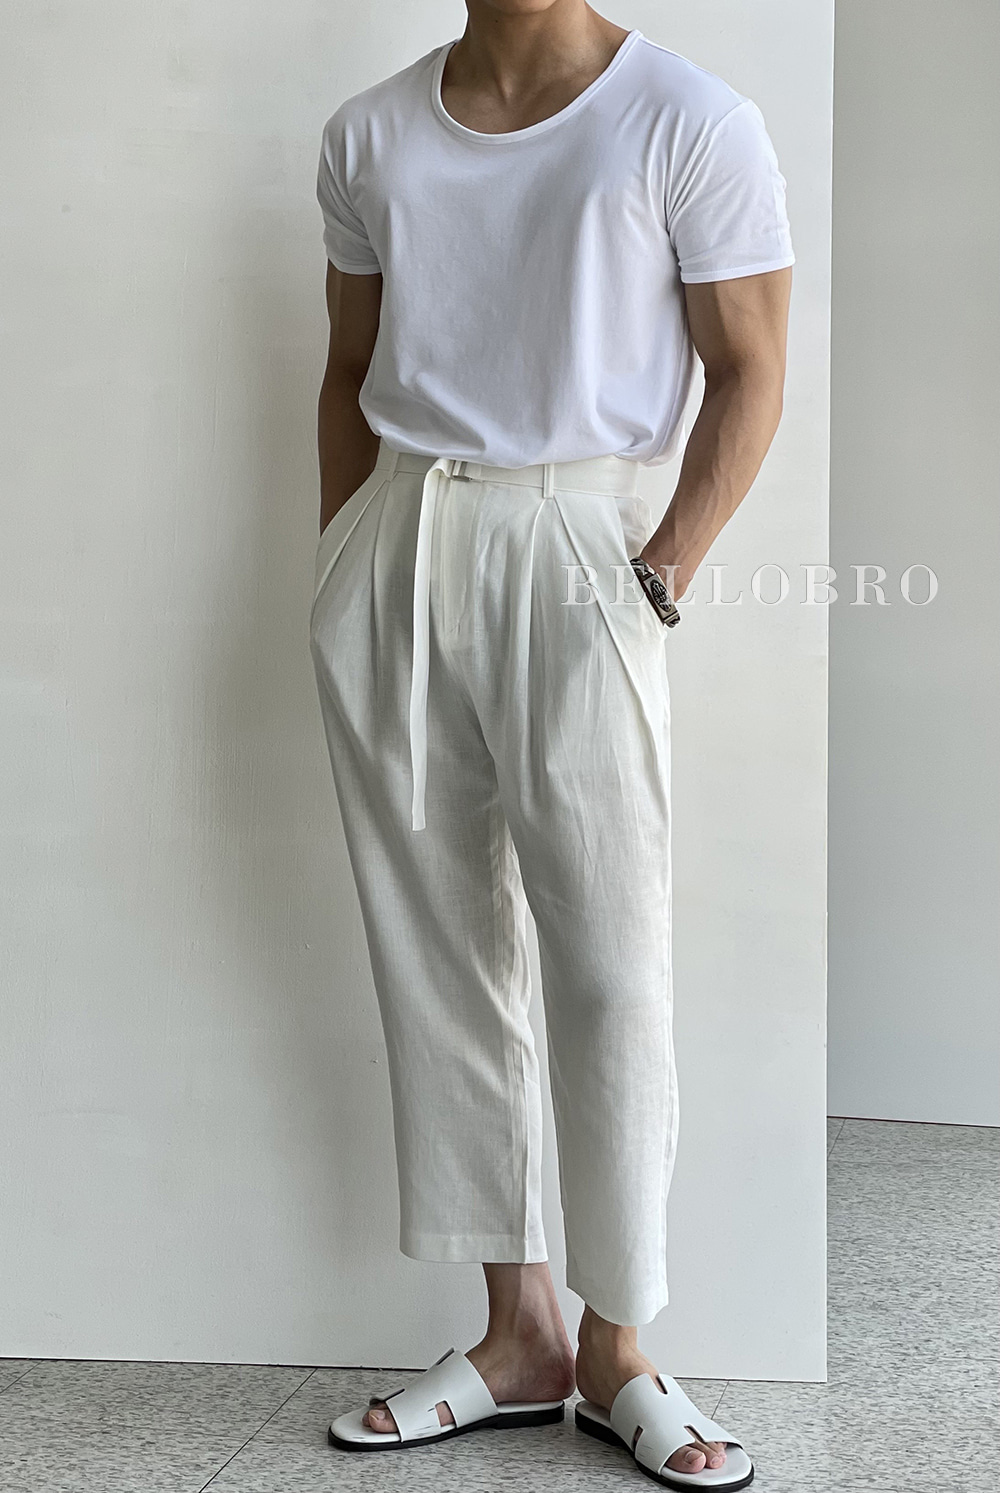 Bellobro crop linen pants (04)